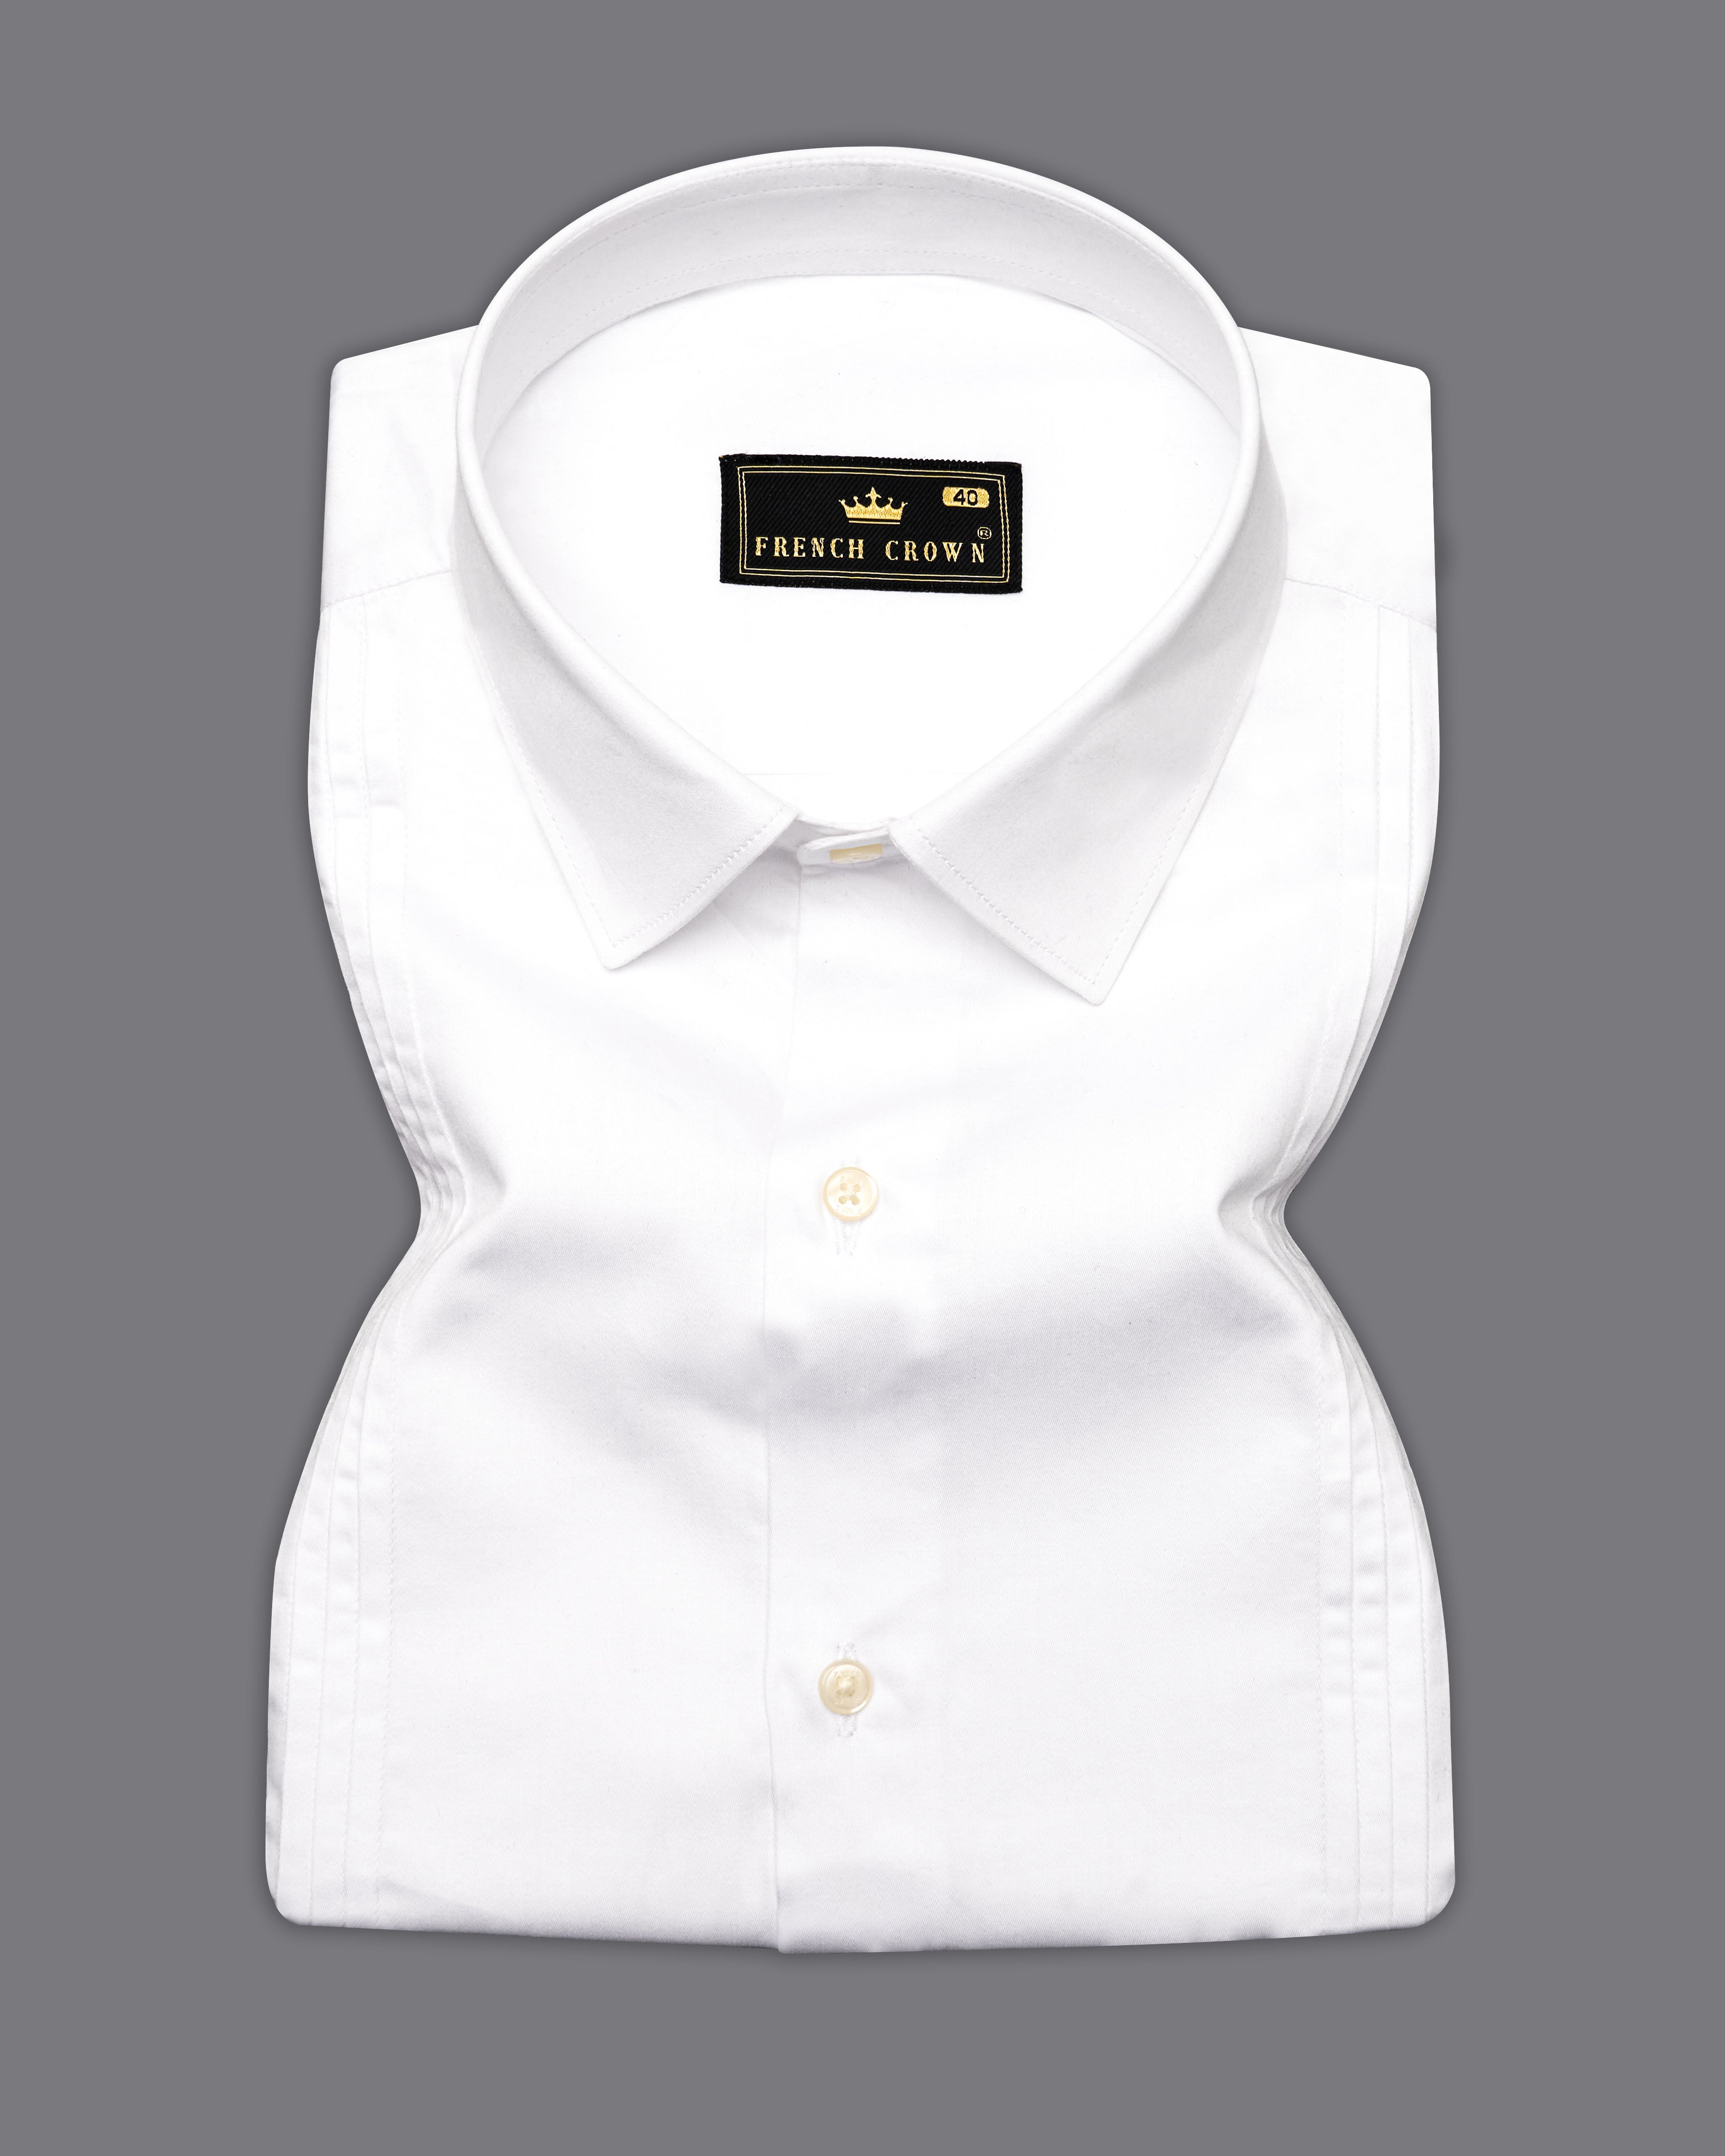 Bright White Pleated Super Soft Premium Cotton Tuxedo Shirt , 9583-P595-SS-H-38, 9583-P595-SS-H-39, 9583-P595-SS-H-40, 9583-P595-SS-H-42, 9583-P595-SS-H-44, 9583-P595-SS-H-46, 9583-P595-SS-H-48, 9583-P595-SS-H-50, 9583-P595-SS-H-52